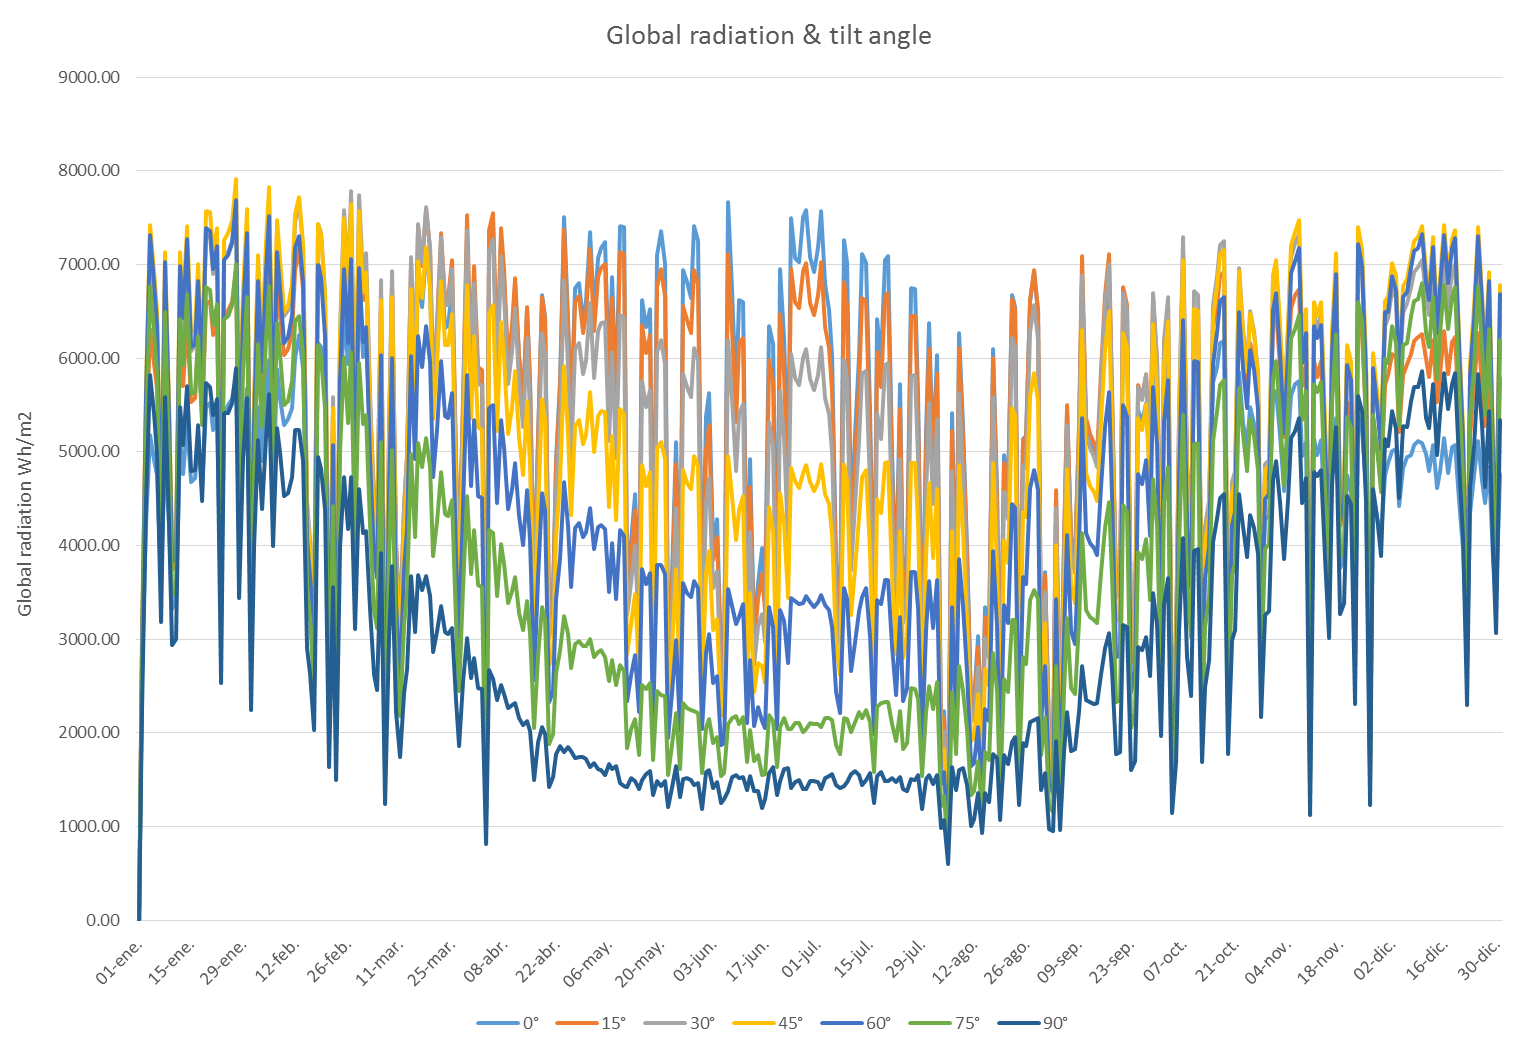 Radiación global en diferentes ángulos de inclinación durante el año